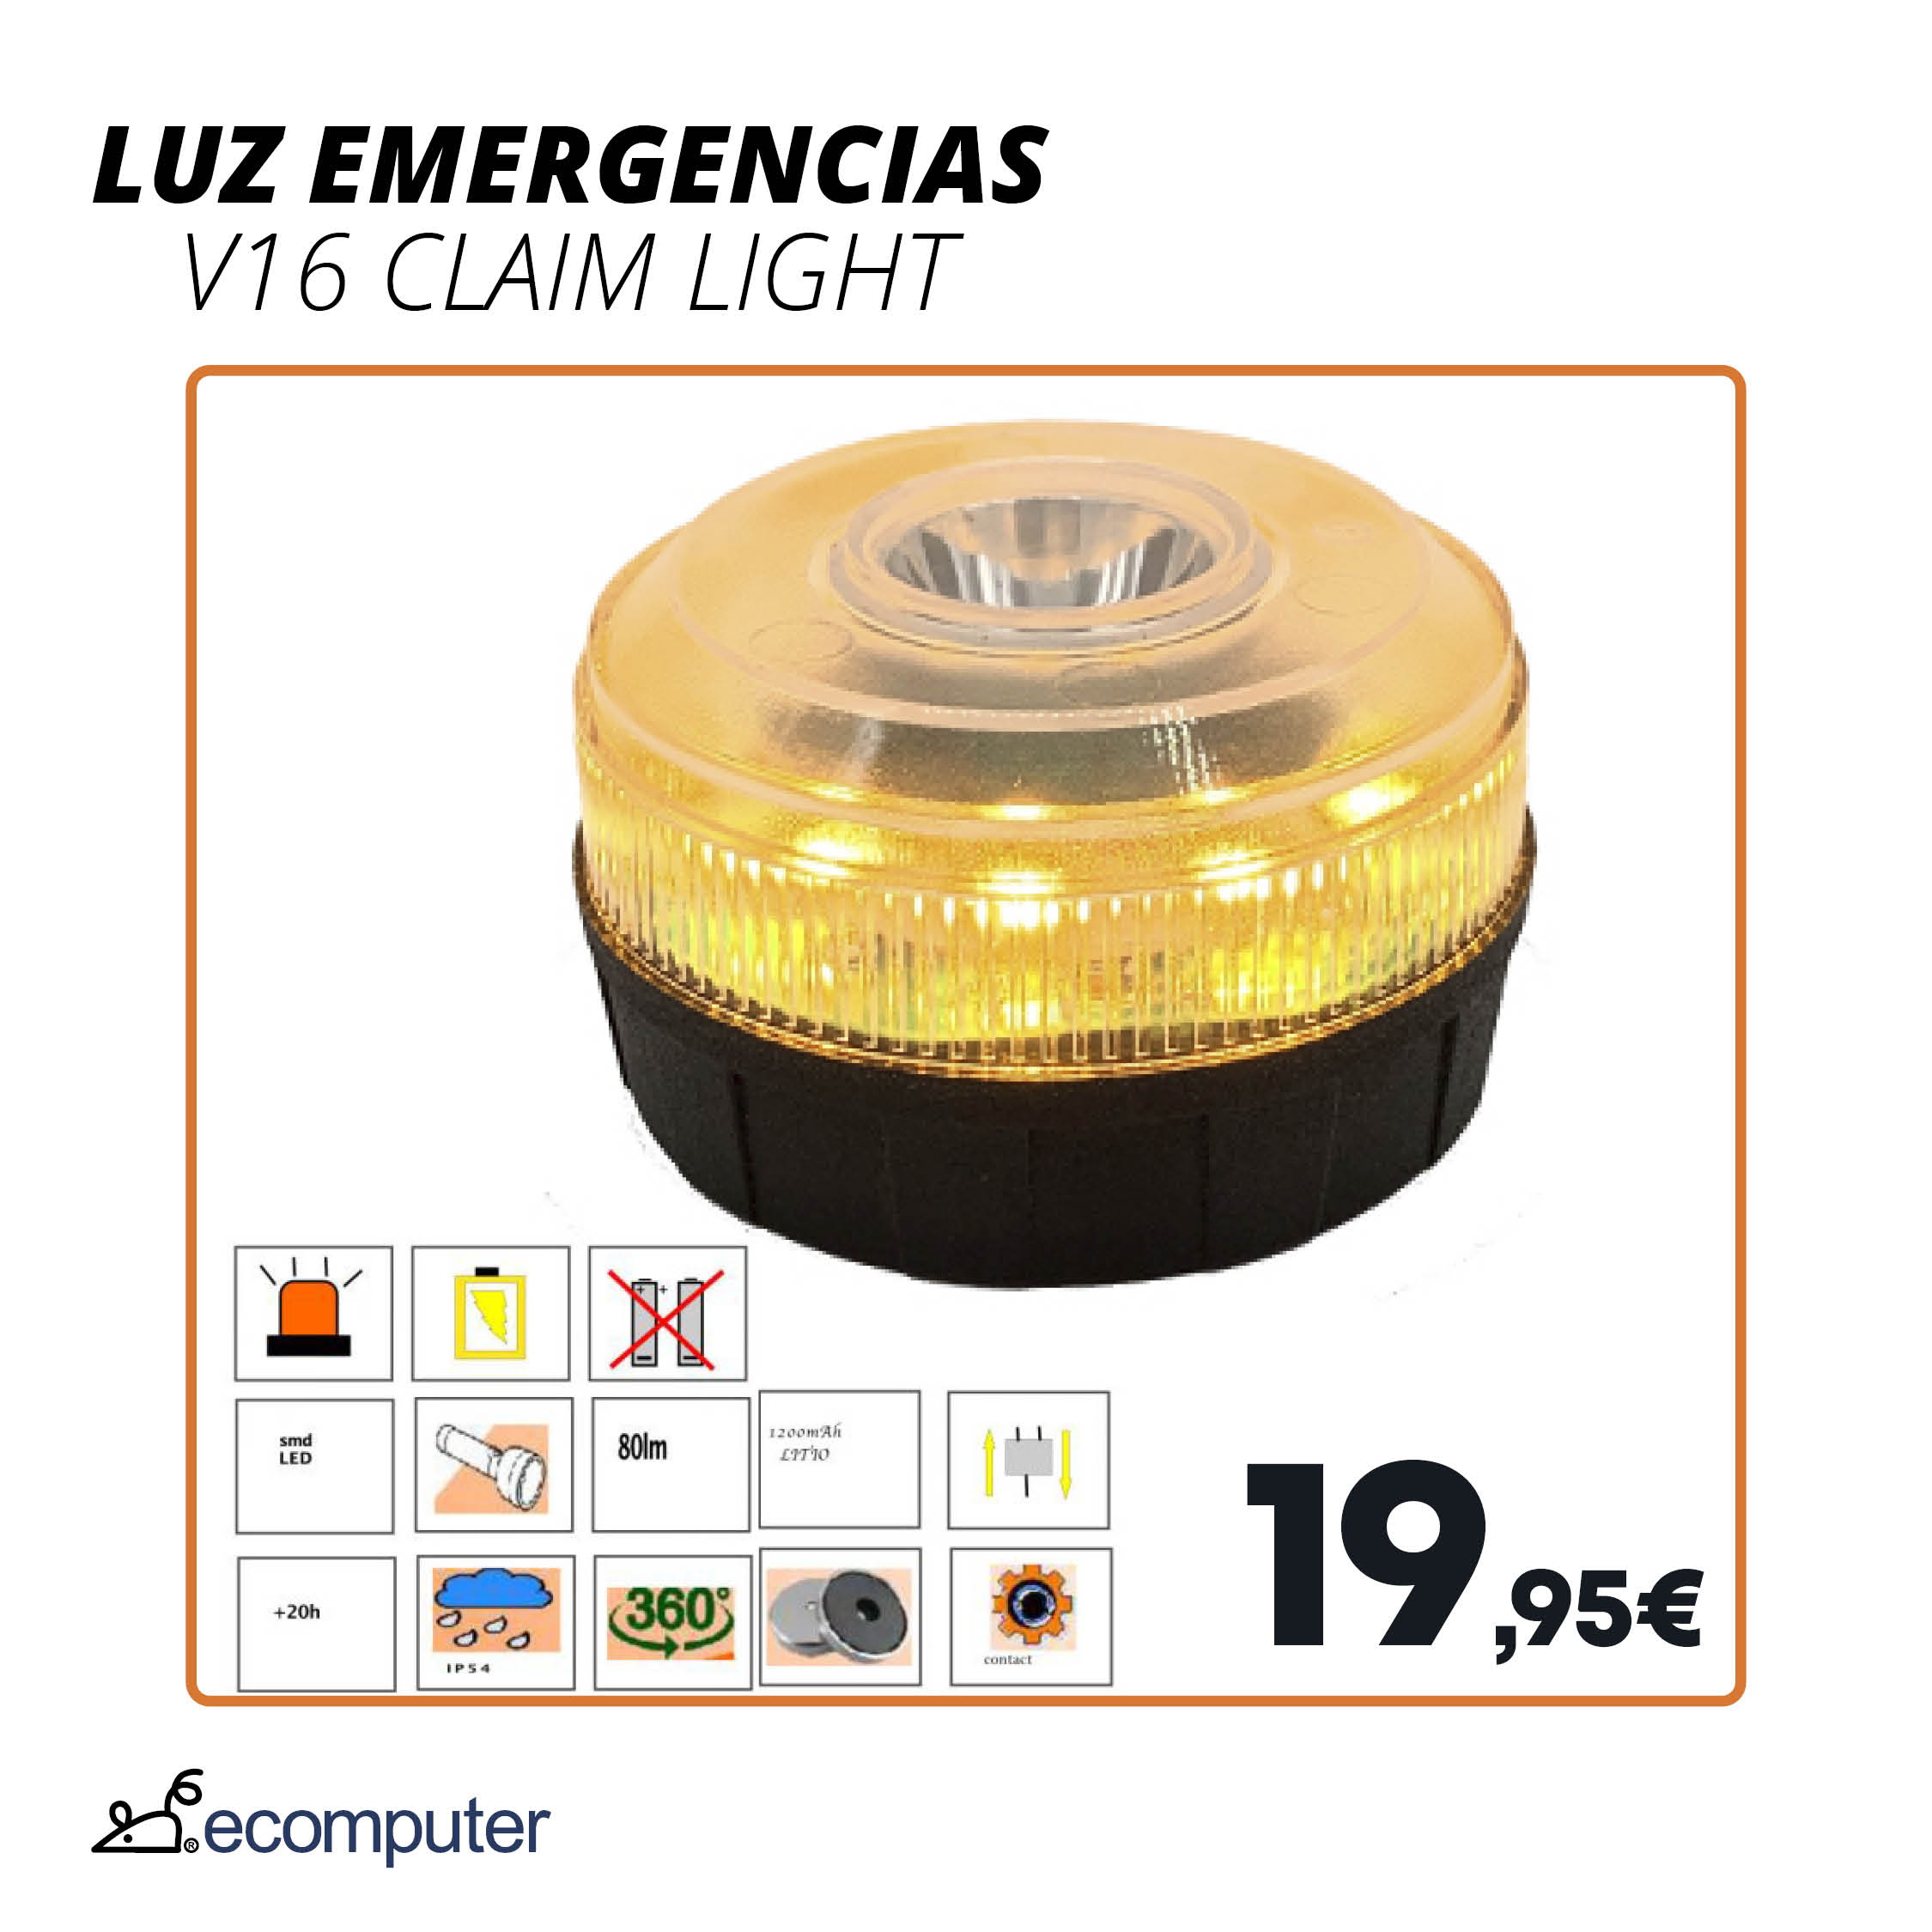 Luz emergencia V16 claim light